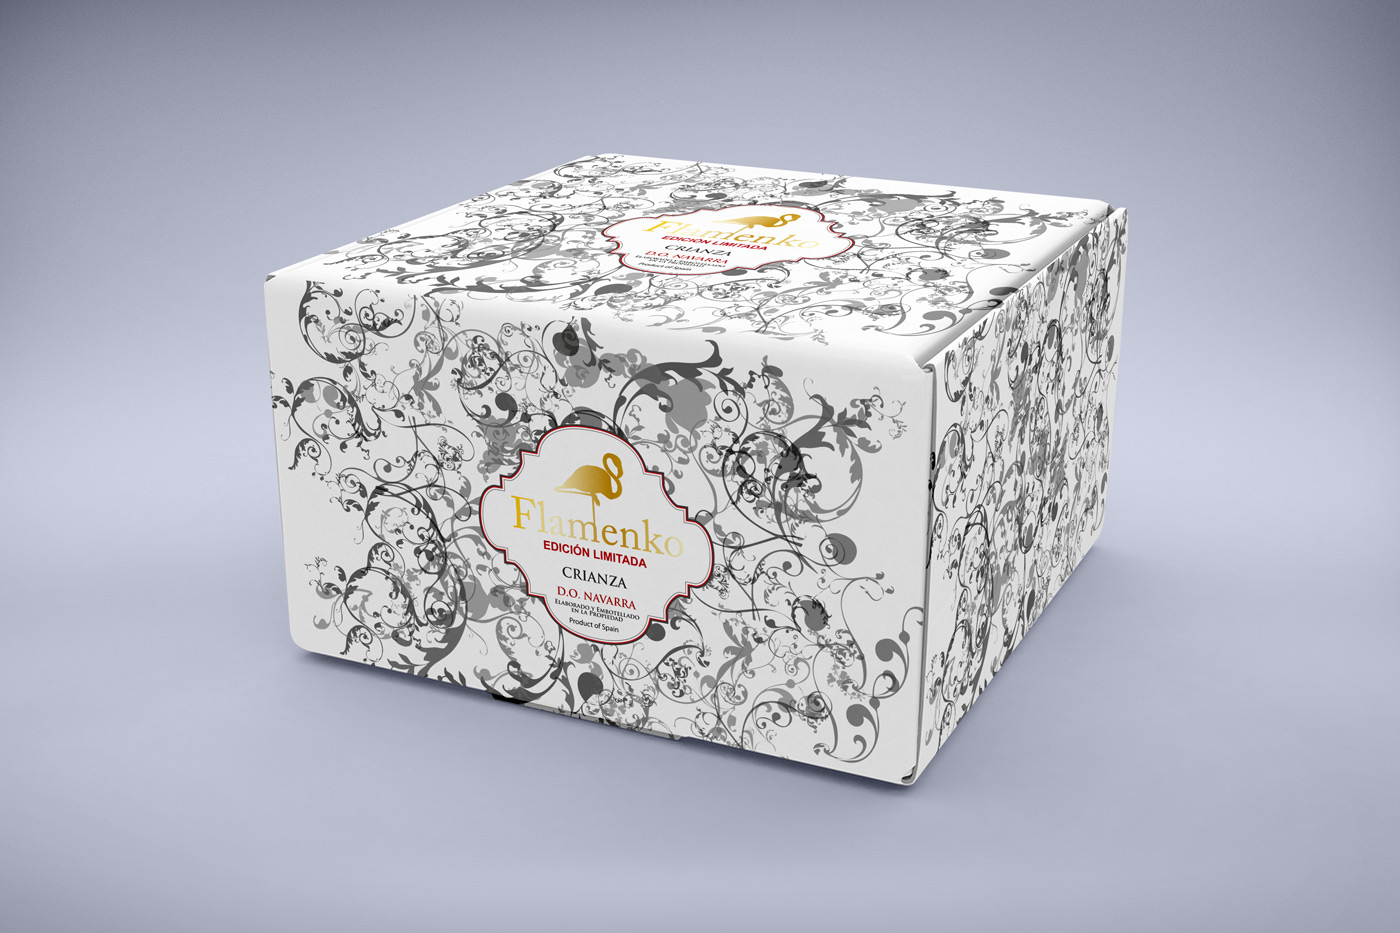 Diseño gráfico y creativo de etiquetas y packaging de vino para FLAMENKO para exportación al mercado Chino